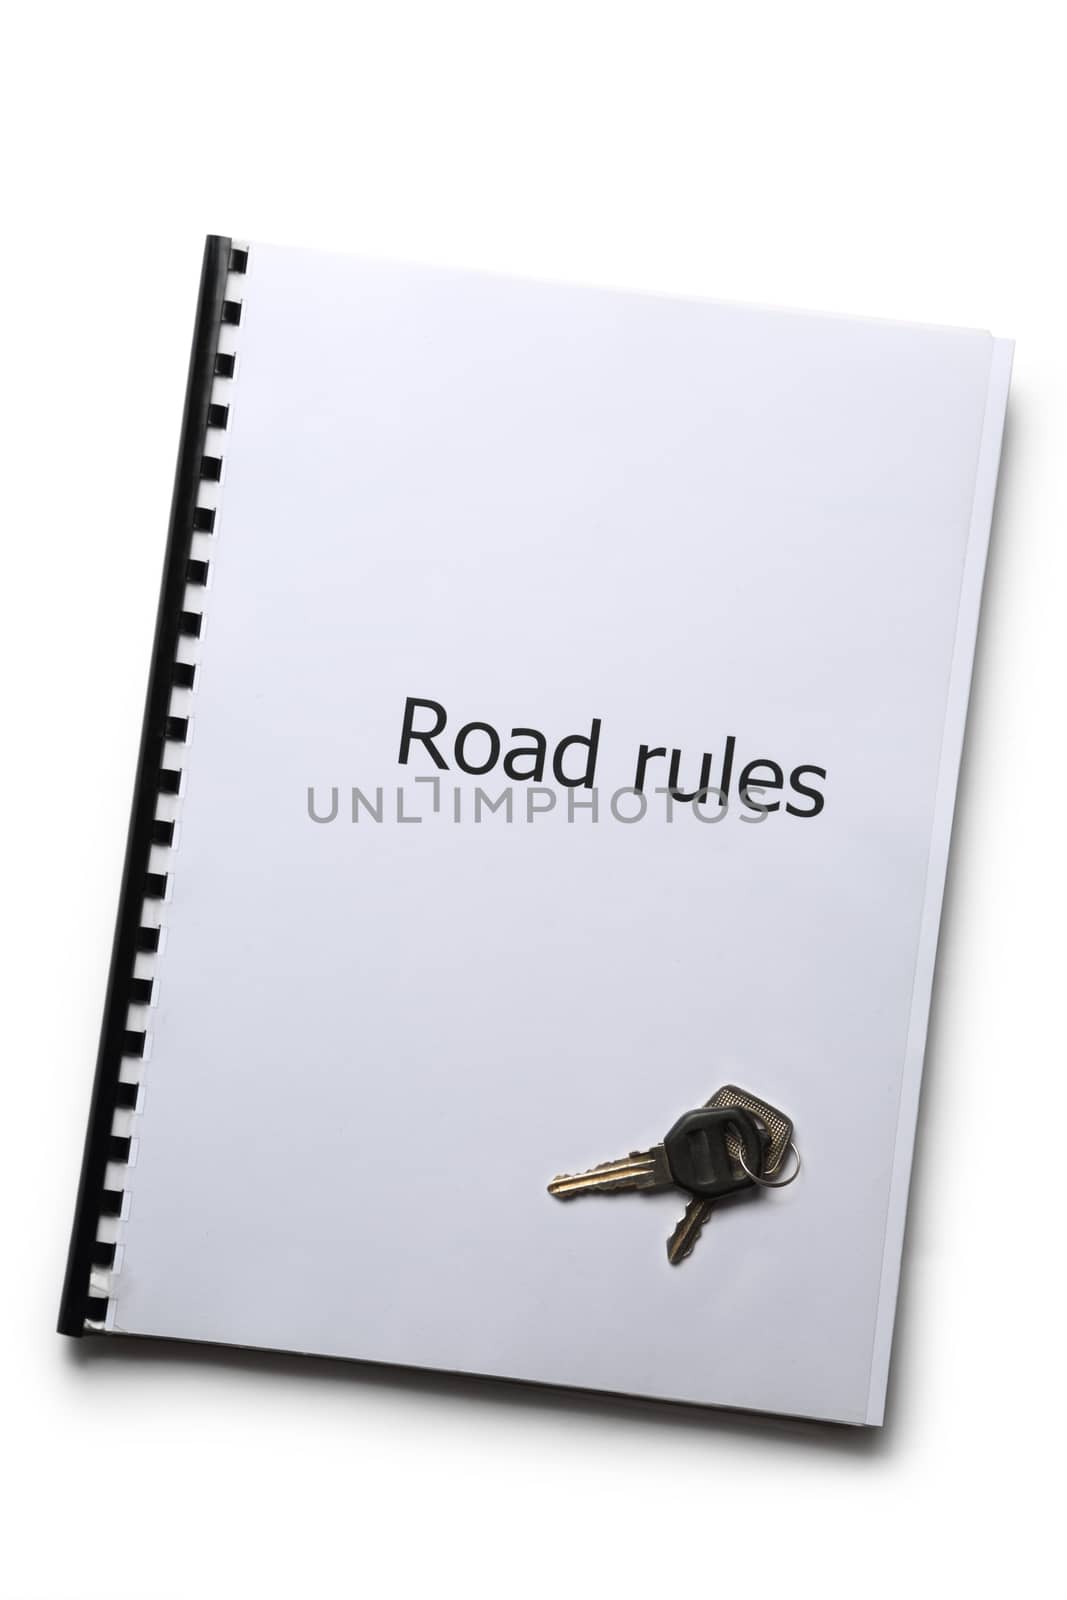 Road rules register with car keys by Garsya